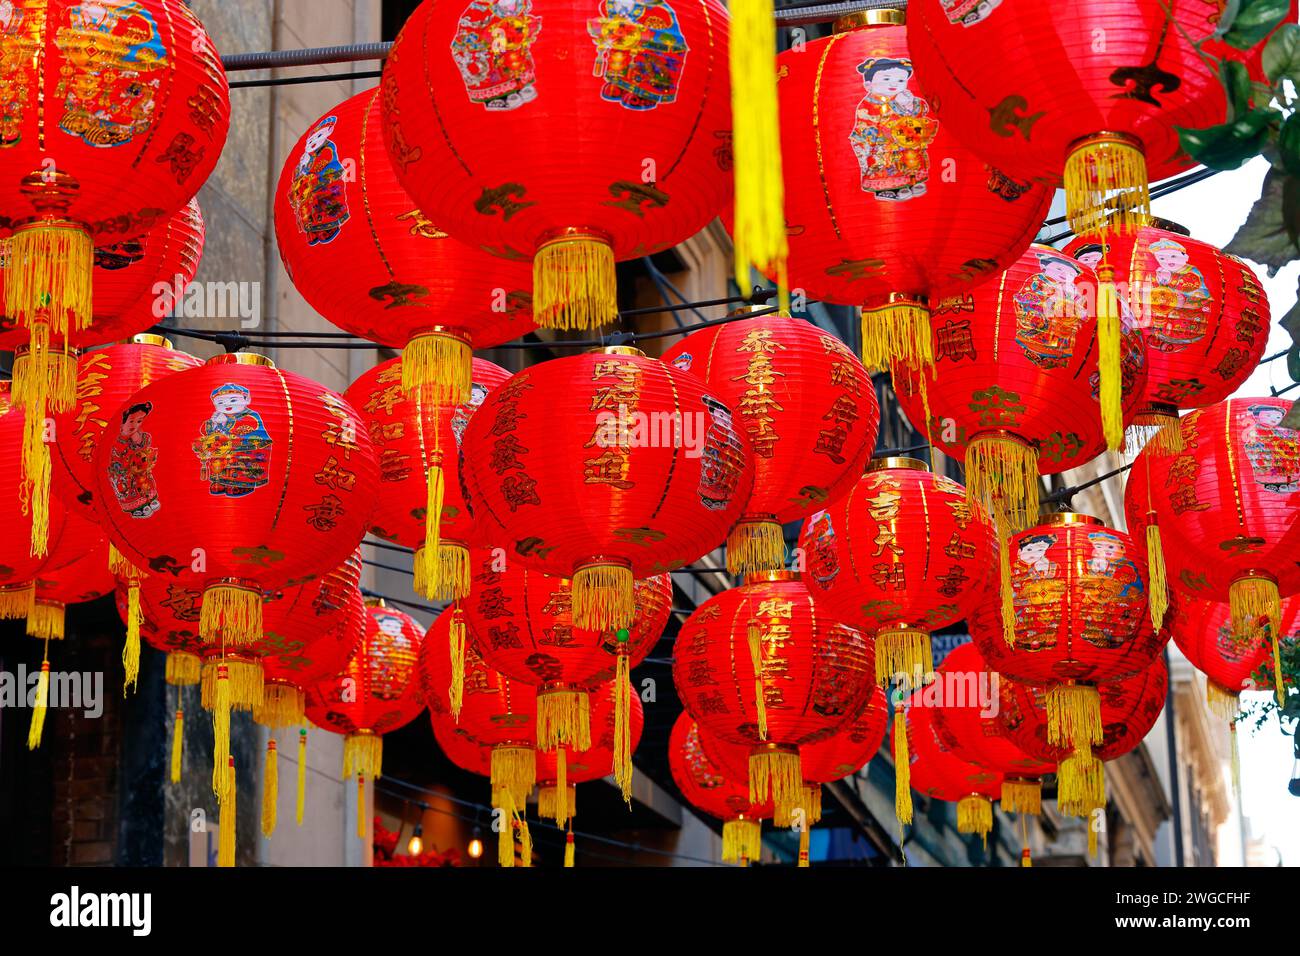 Lanterne rosse cinesi per Capodanno lunare 恭喜發財 con nappine dorate che fluttuano nell'aria Foto Stock